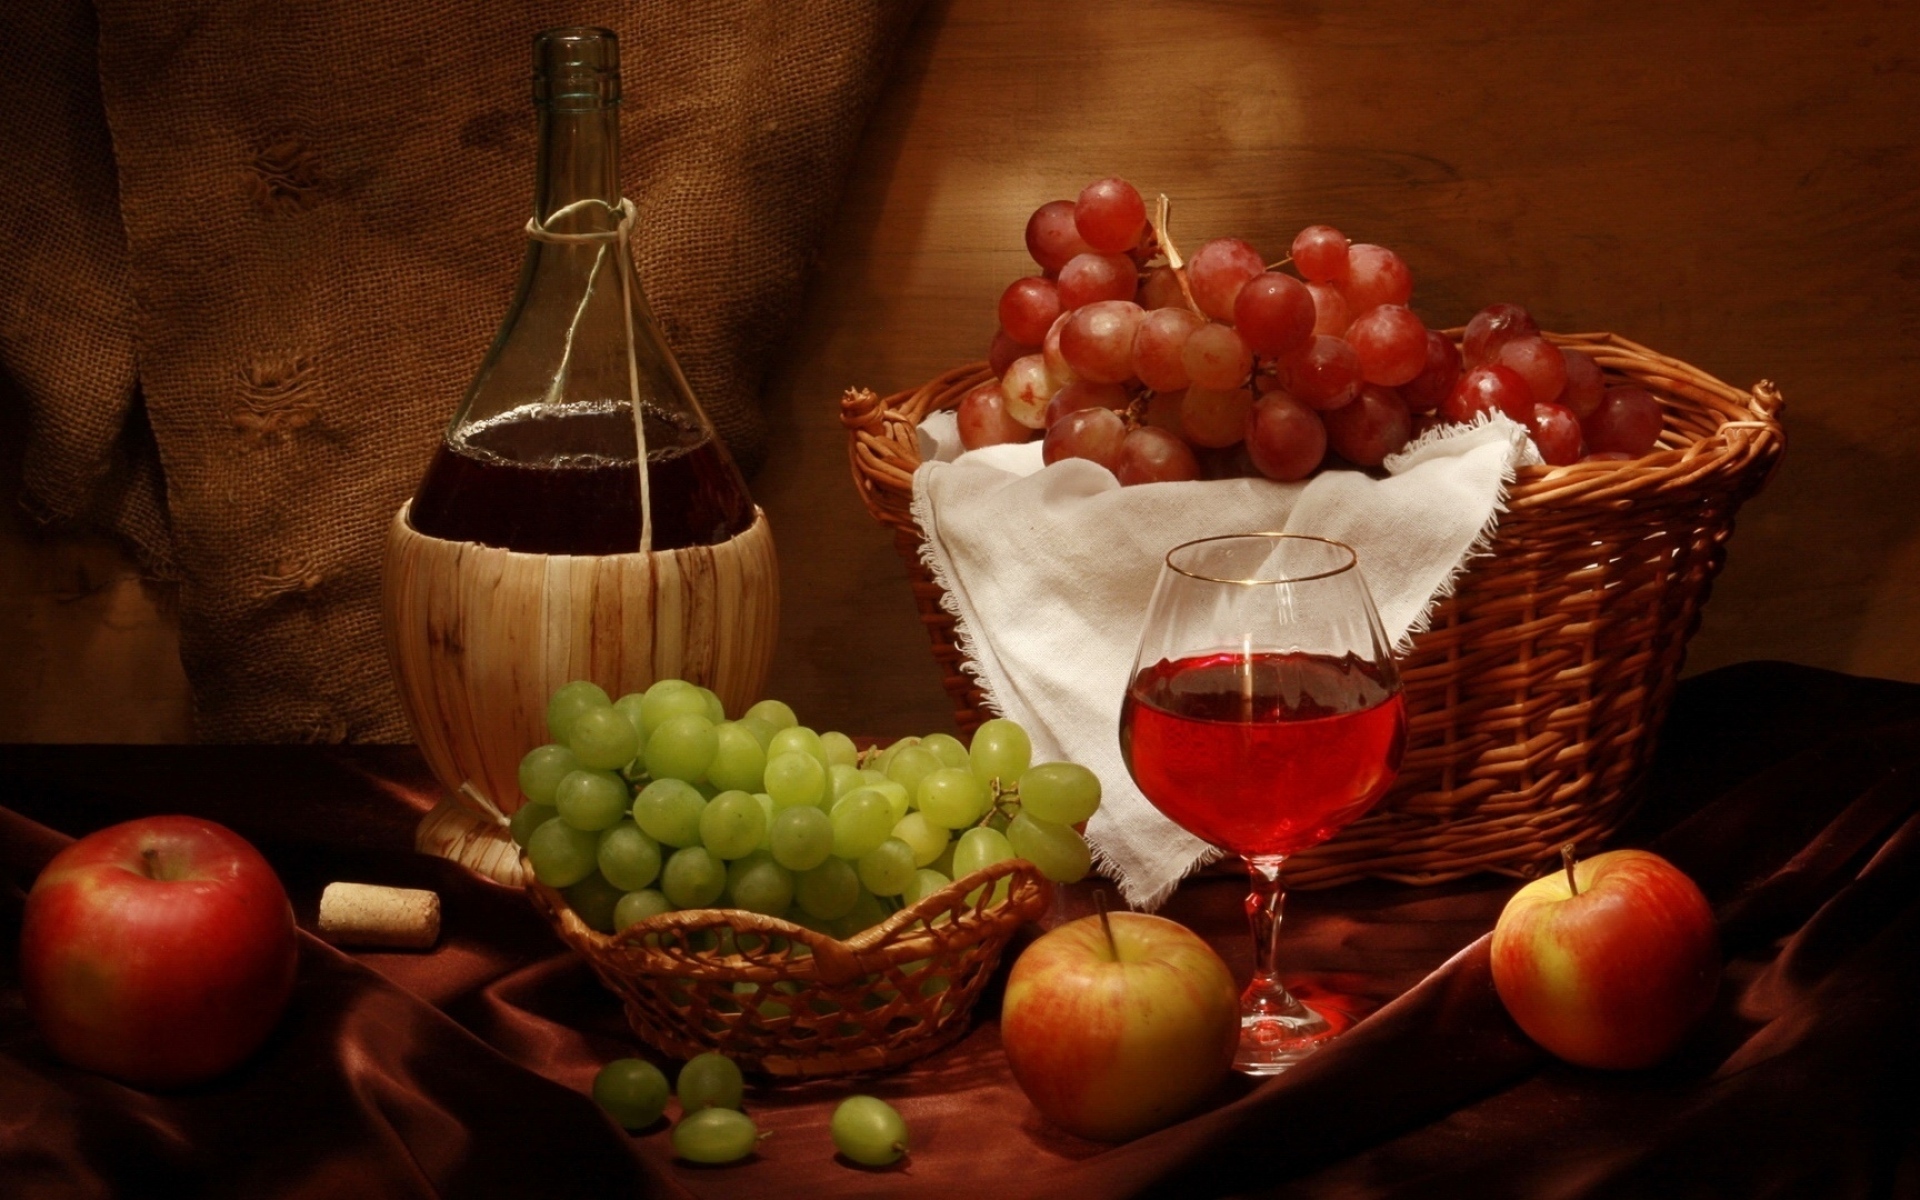 Картинки Вино, виноград, яблоки, корзина, бутылка, натюрморт фото и обои на рабочий стол